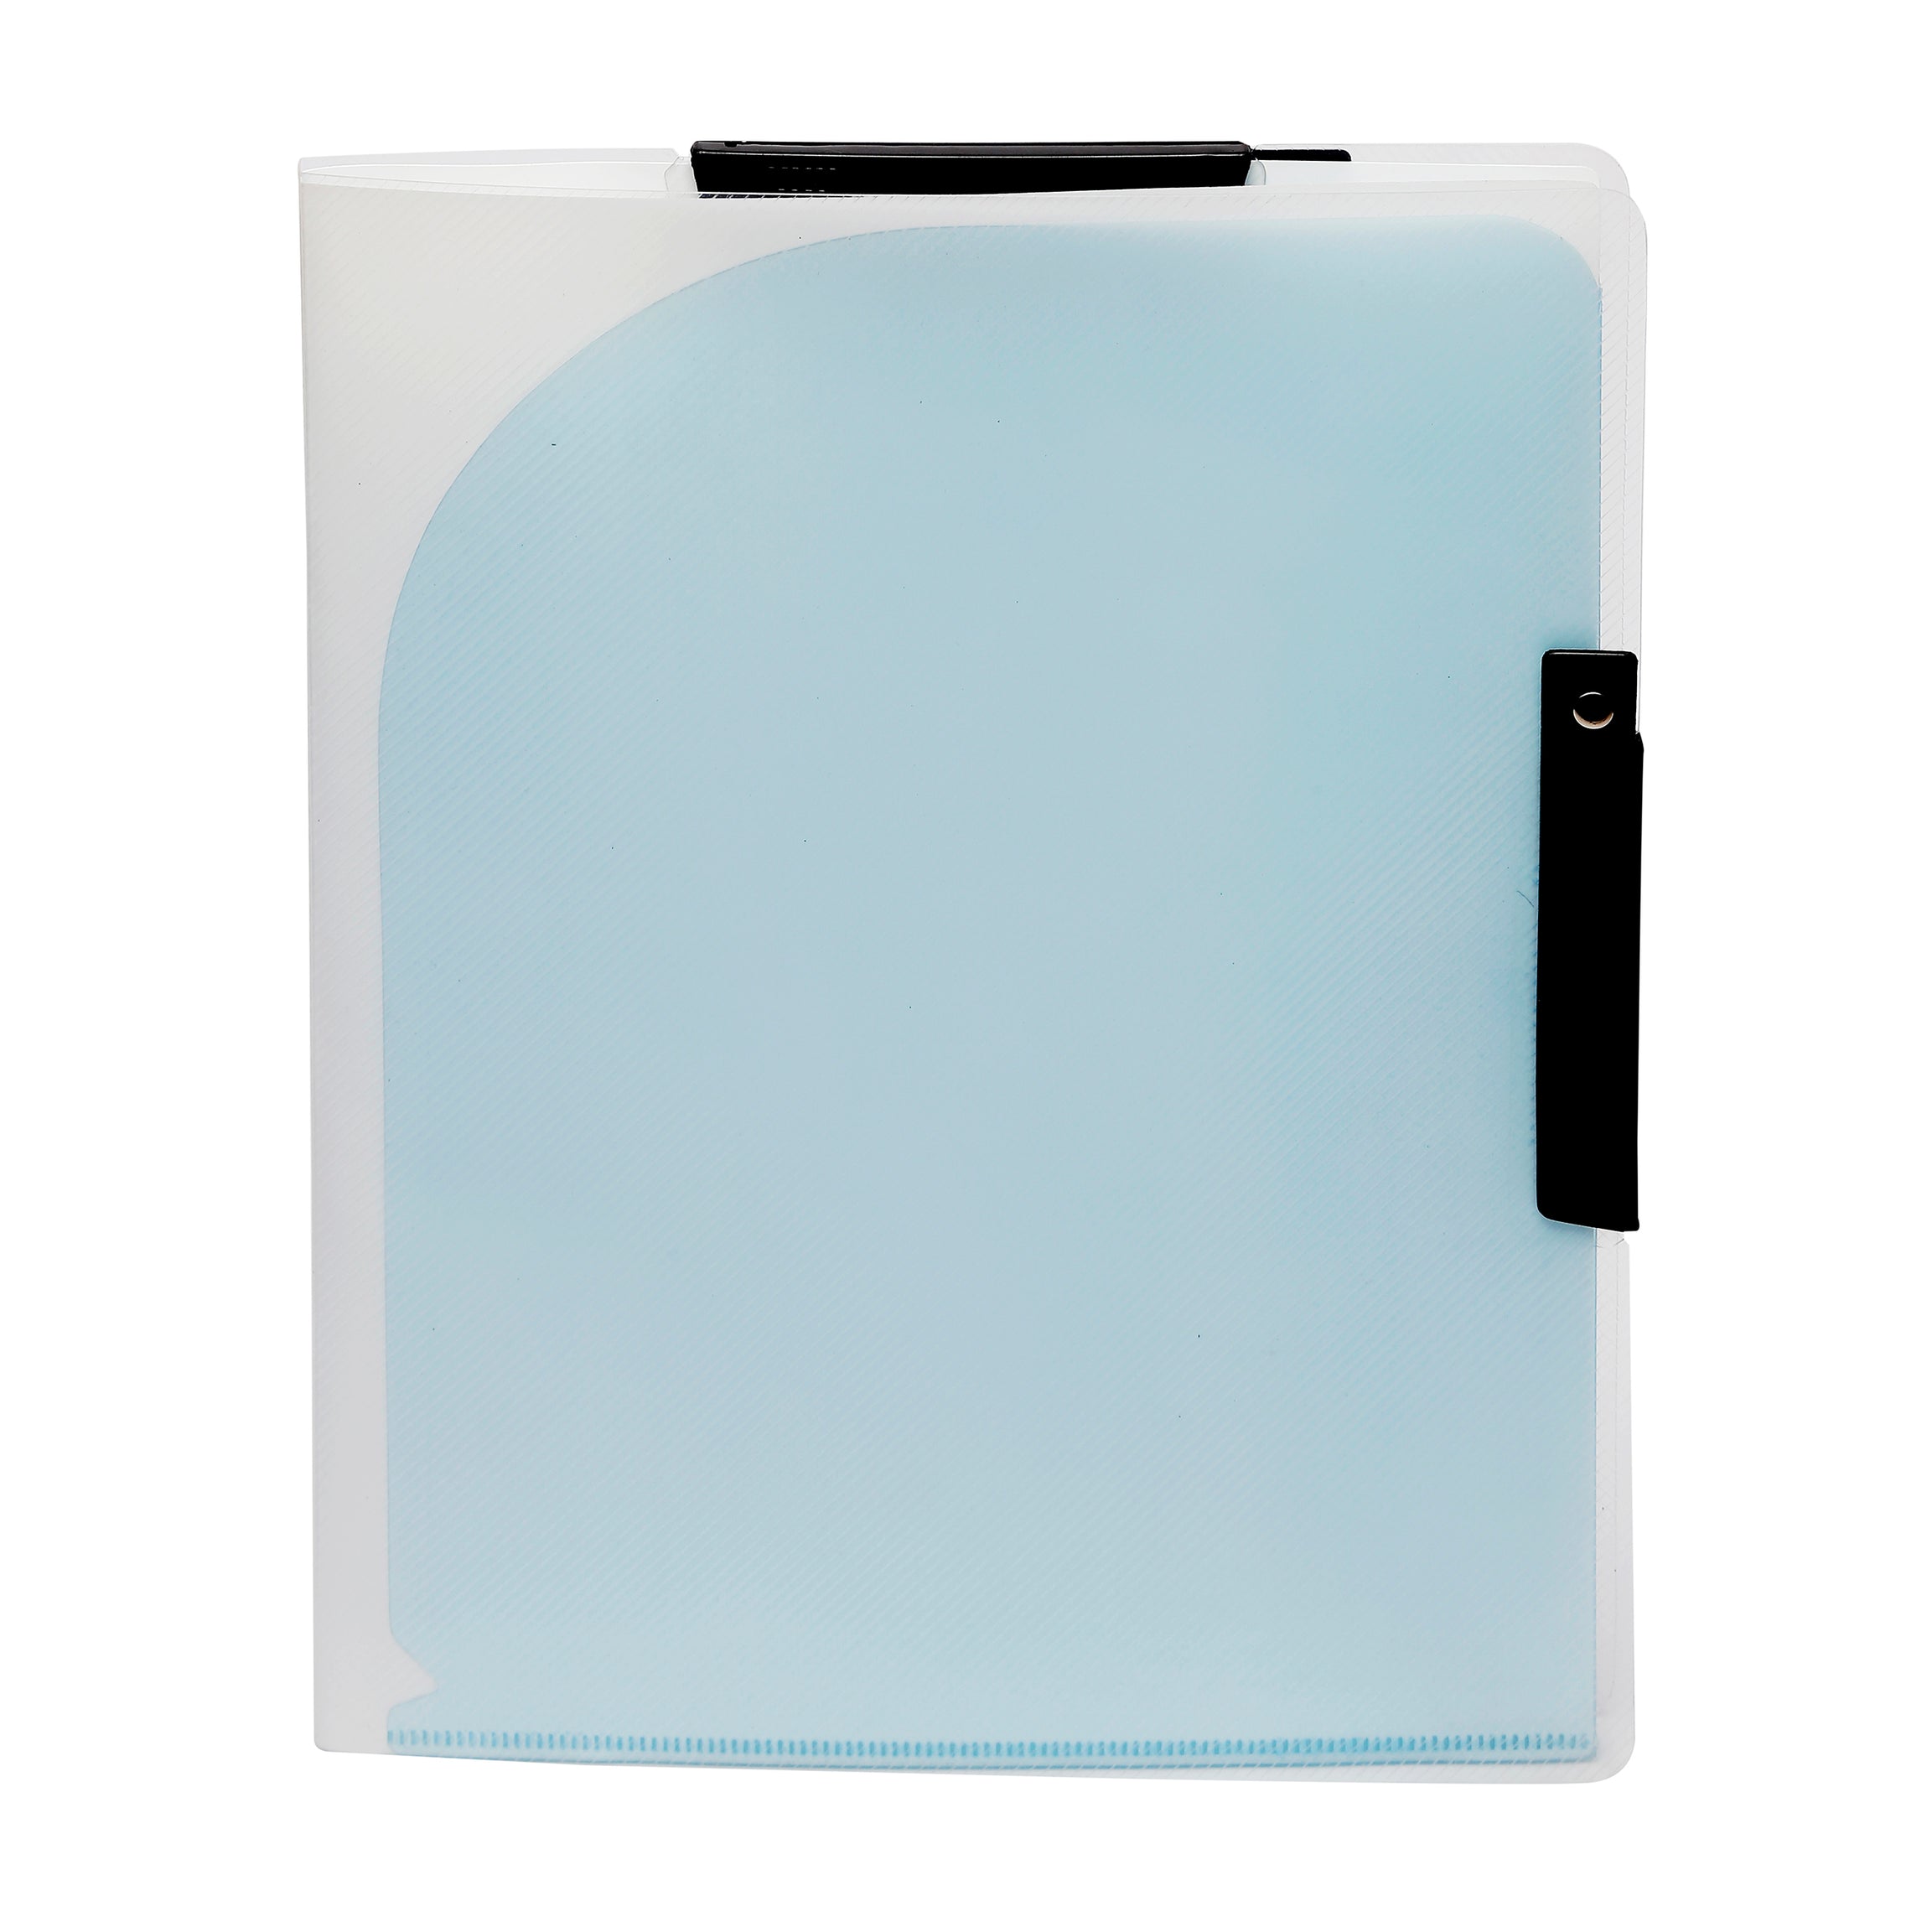 Eslee Document Folder | 10 Pockets Plastic Folder | A4 Size